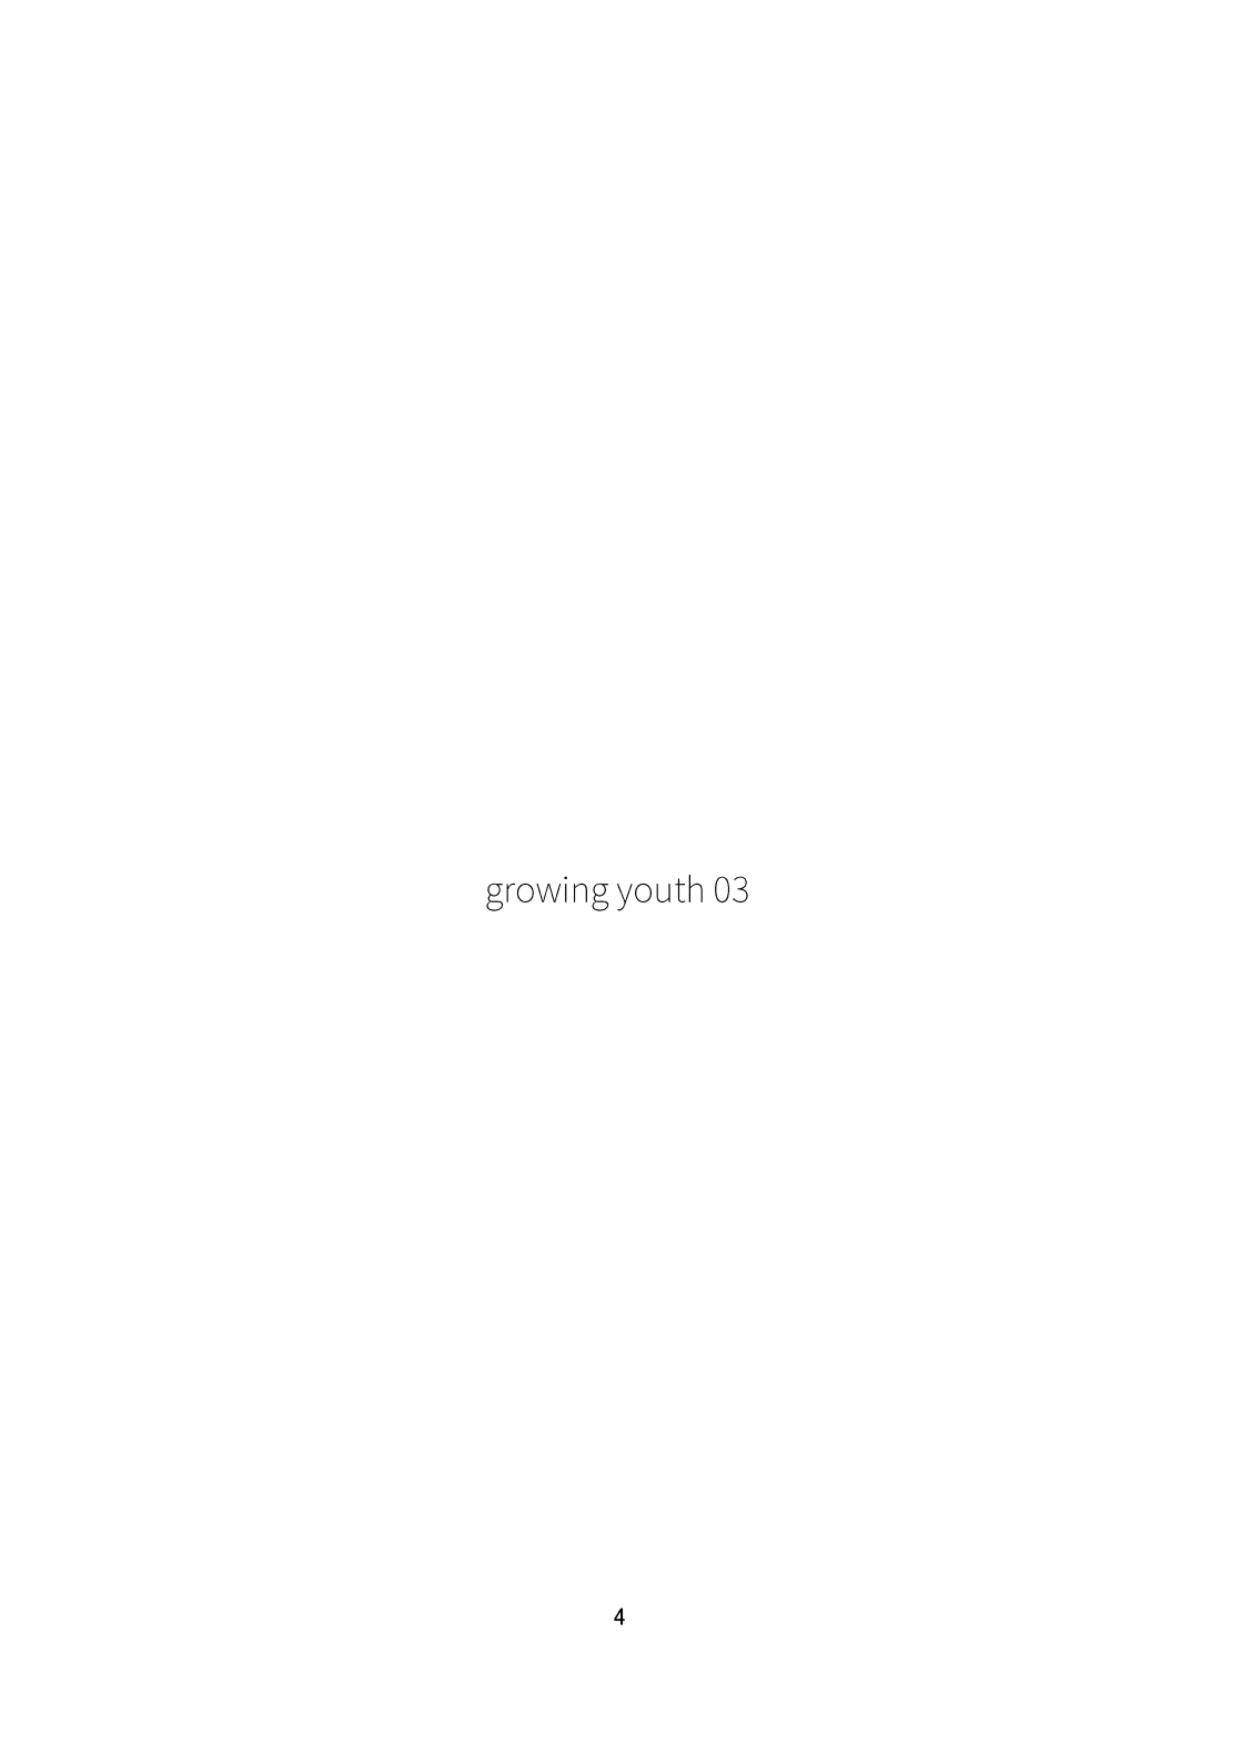 (ショタスクラッチ35) [辻斬り温泉] growing youth 03